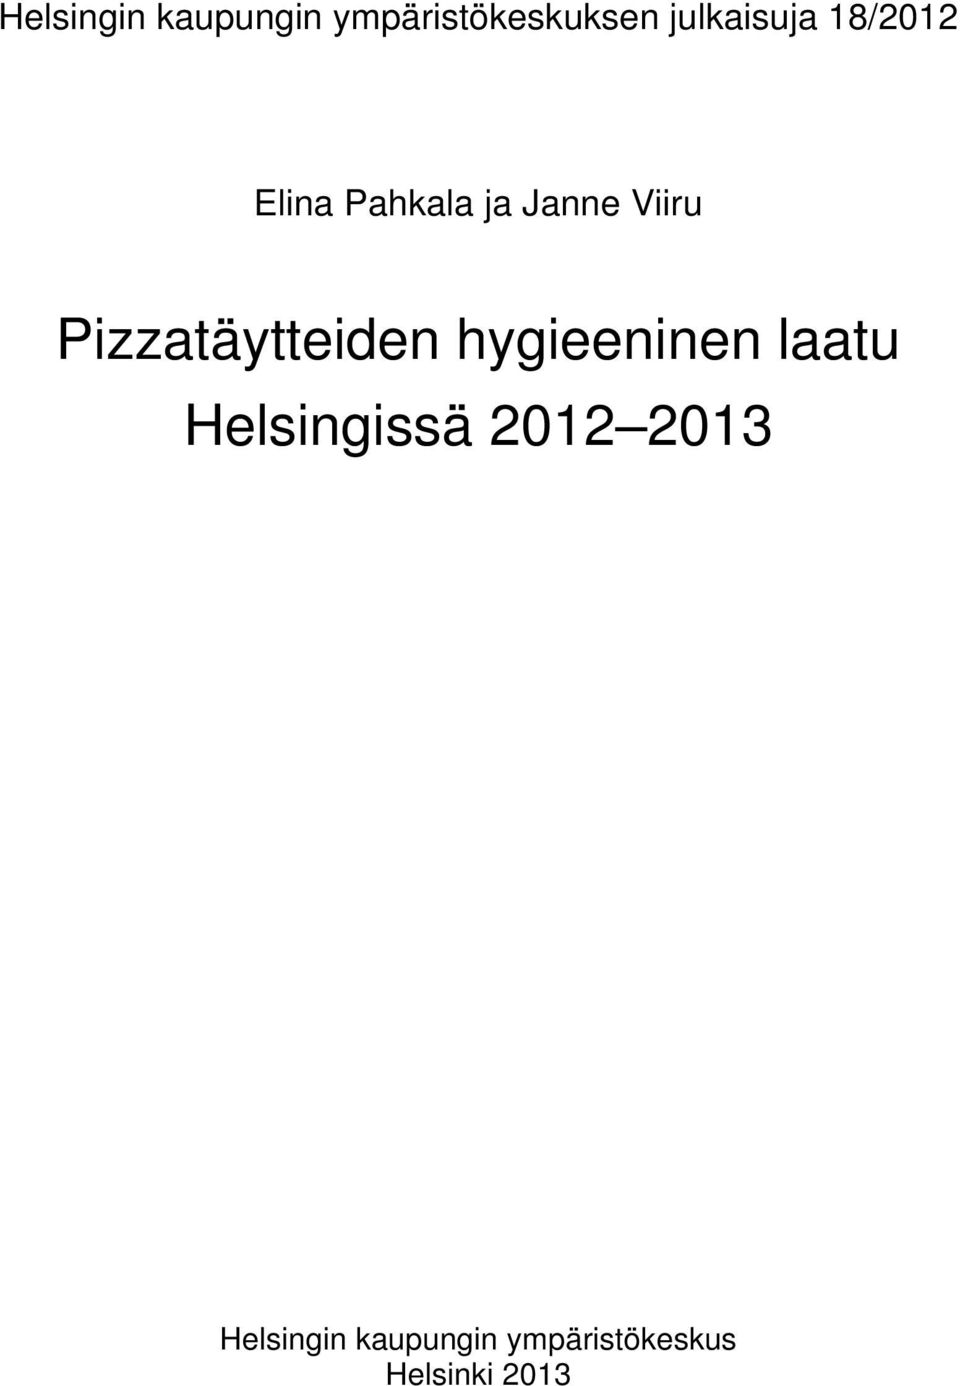 Pizzatäytteiden hygieeninen laatu Helsingissä